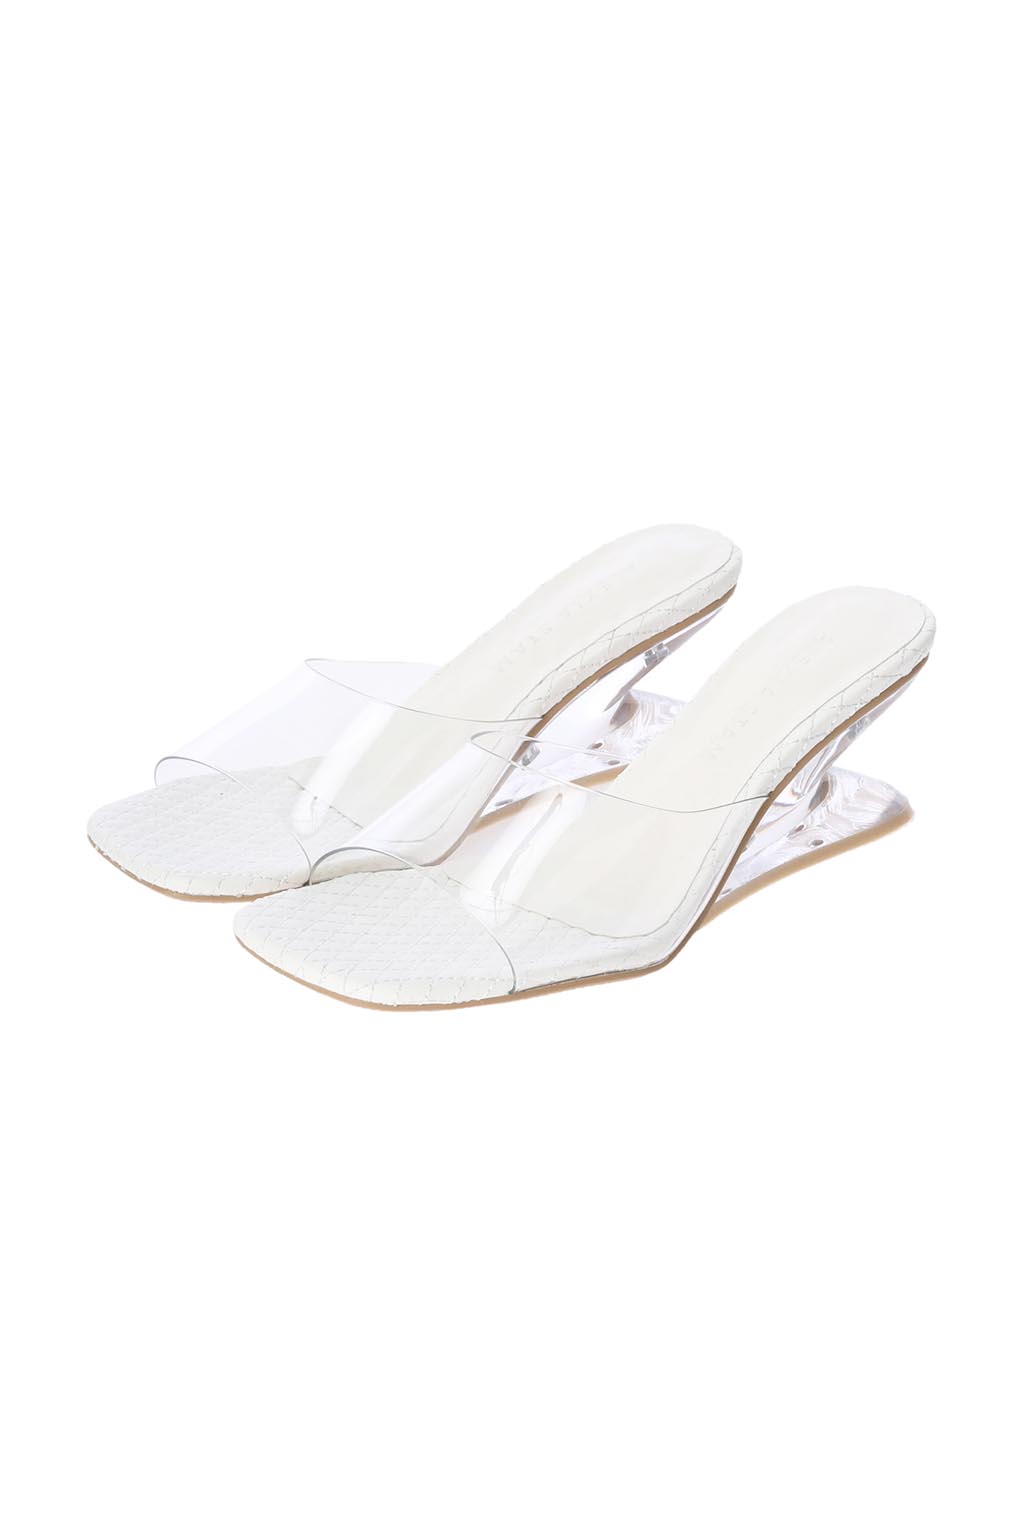 Unique Clear Heel Sandals White 2